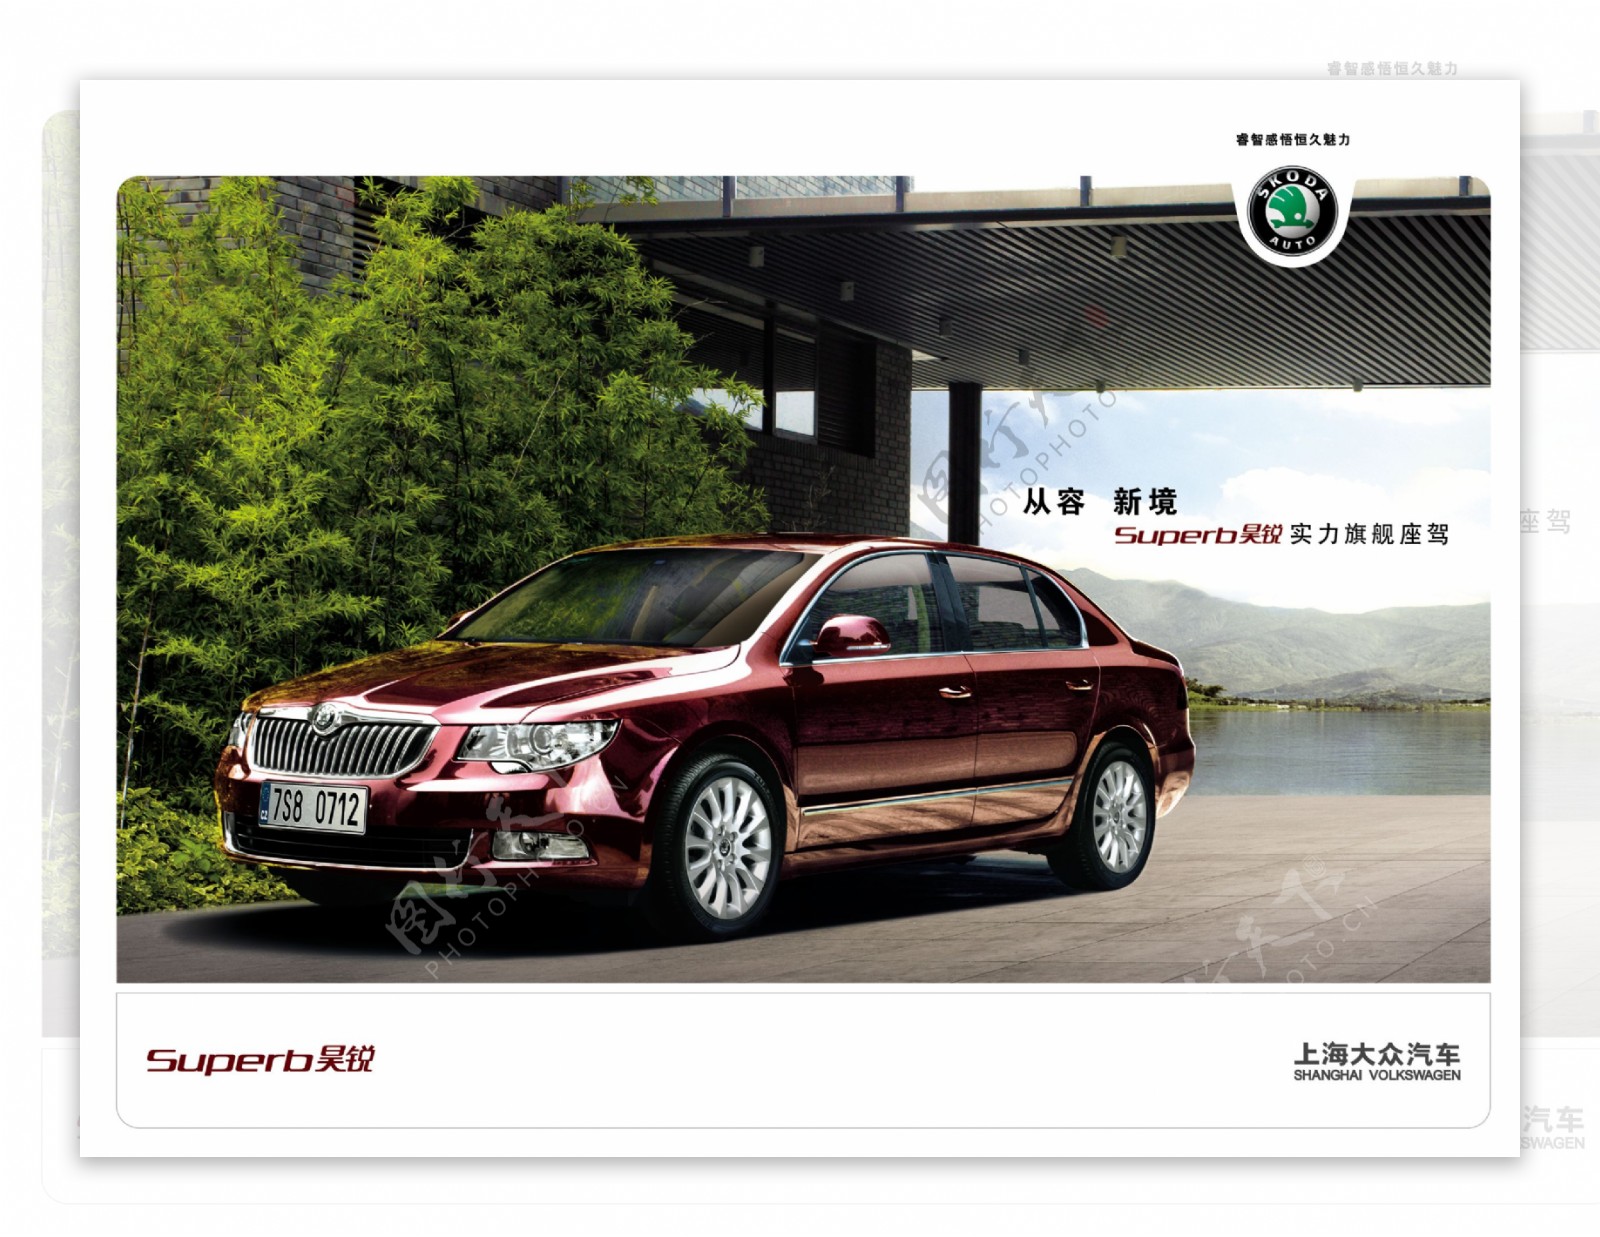 上海大众汽车广告图片